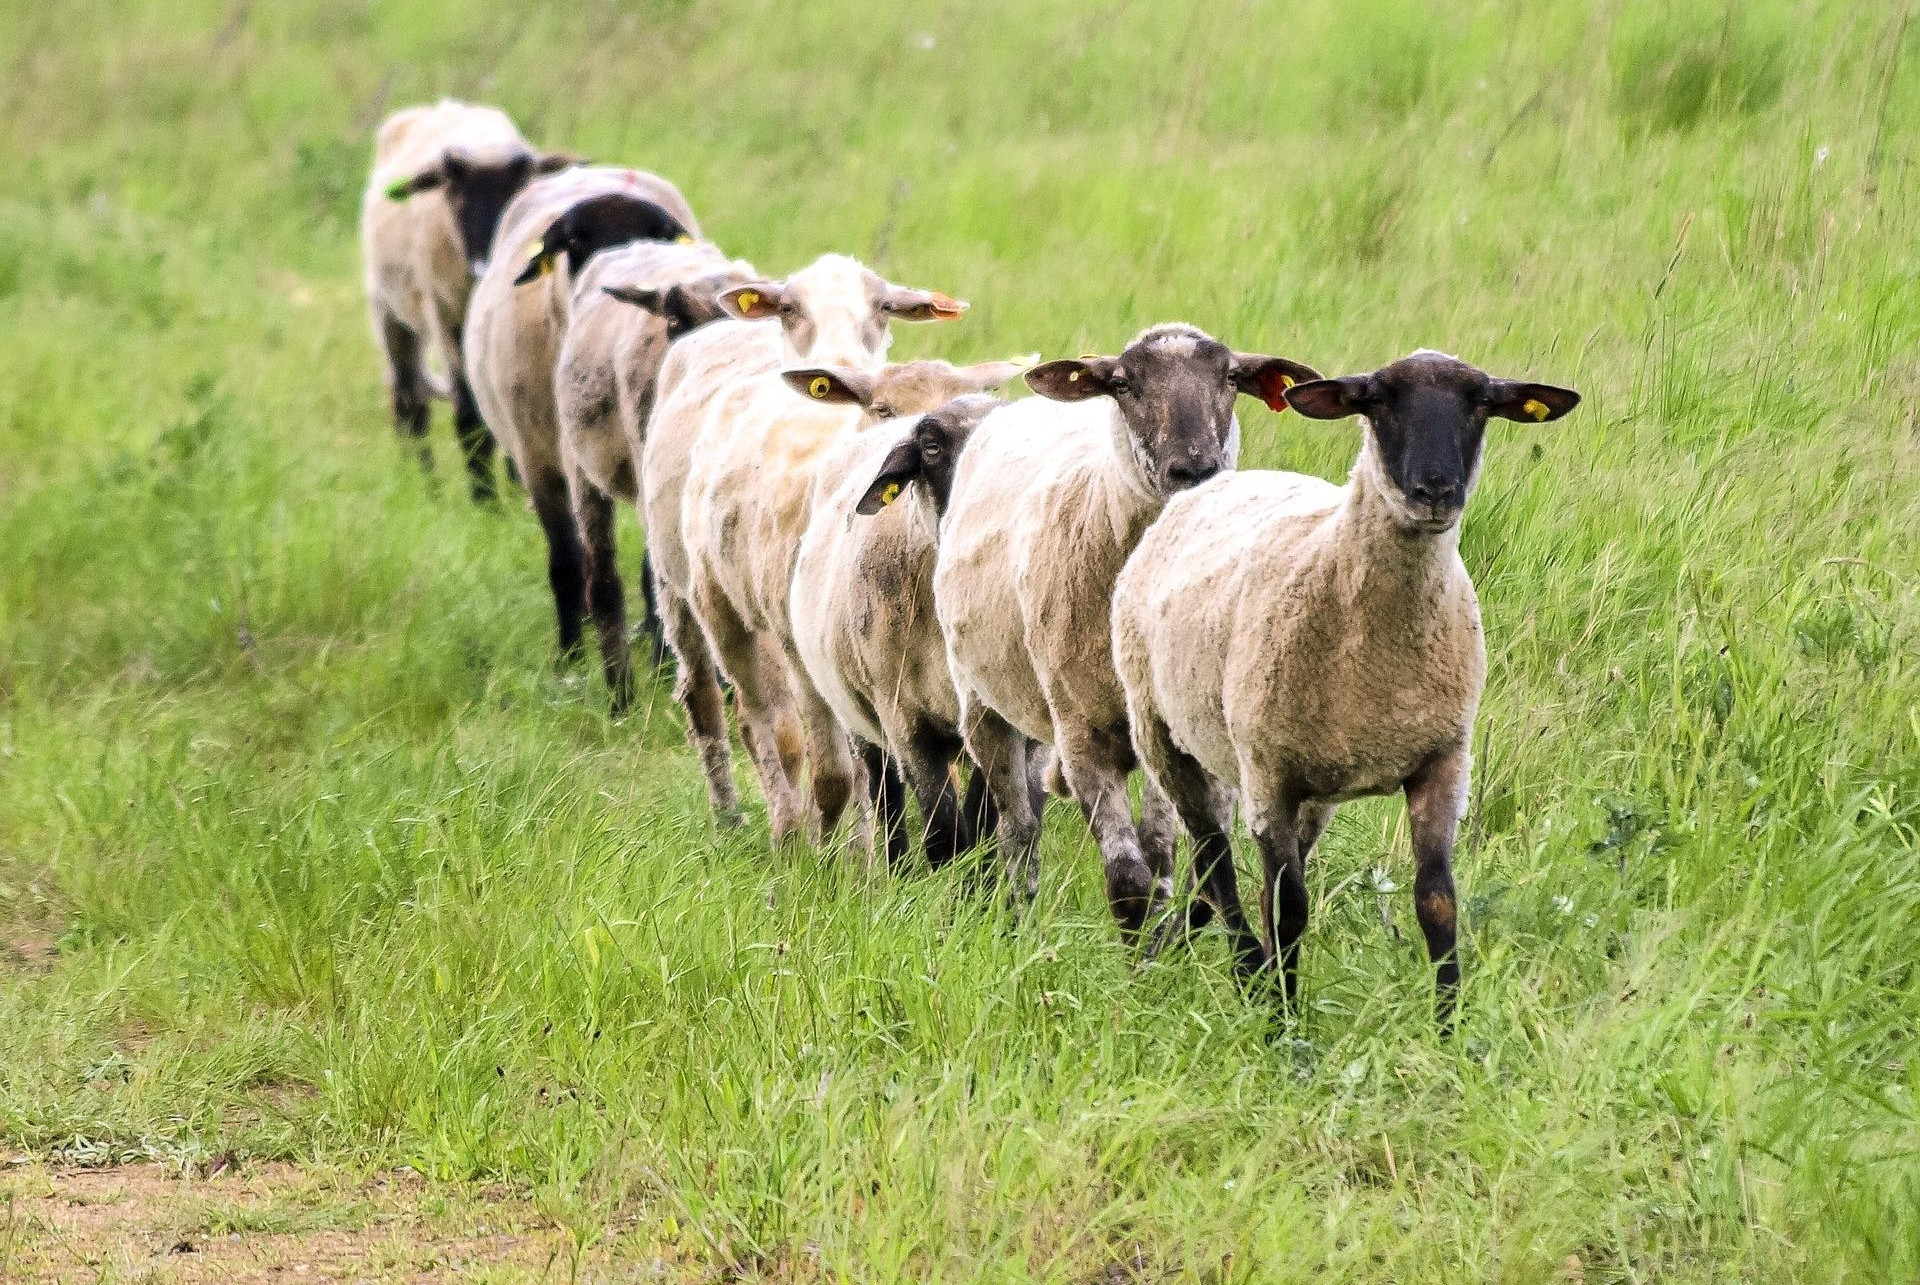 DONACIJA ZA KIM: Socijalno ugroženim domaćinstvima 200 ovaca